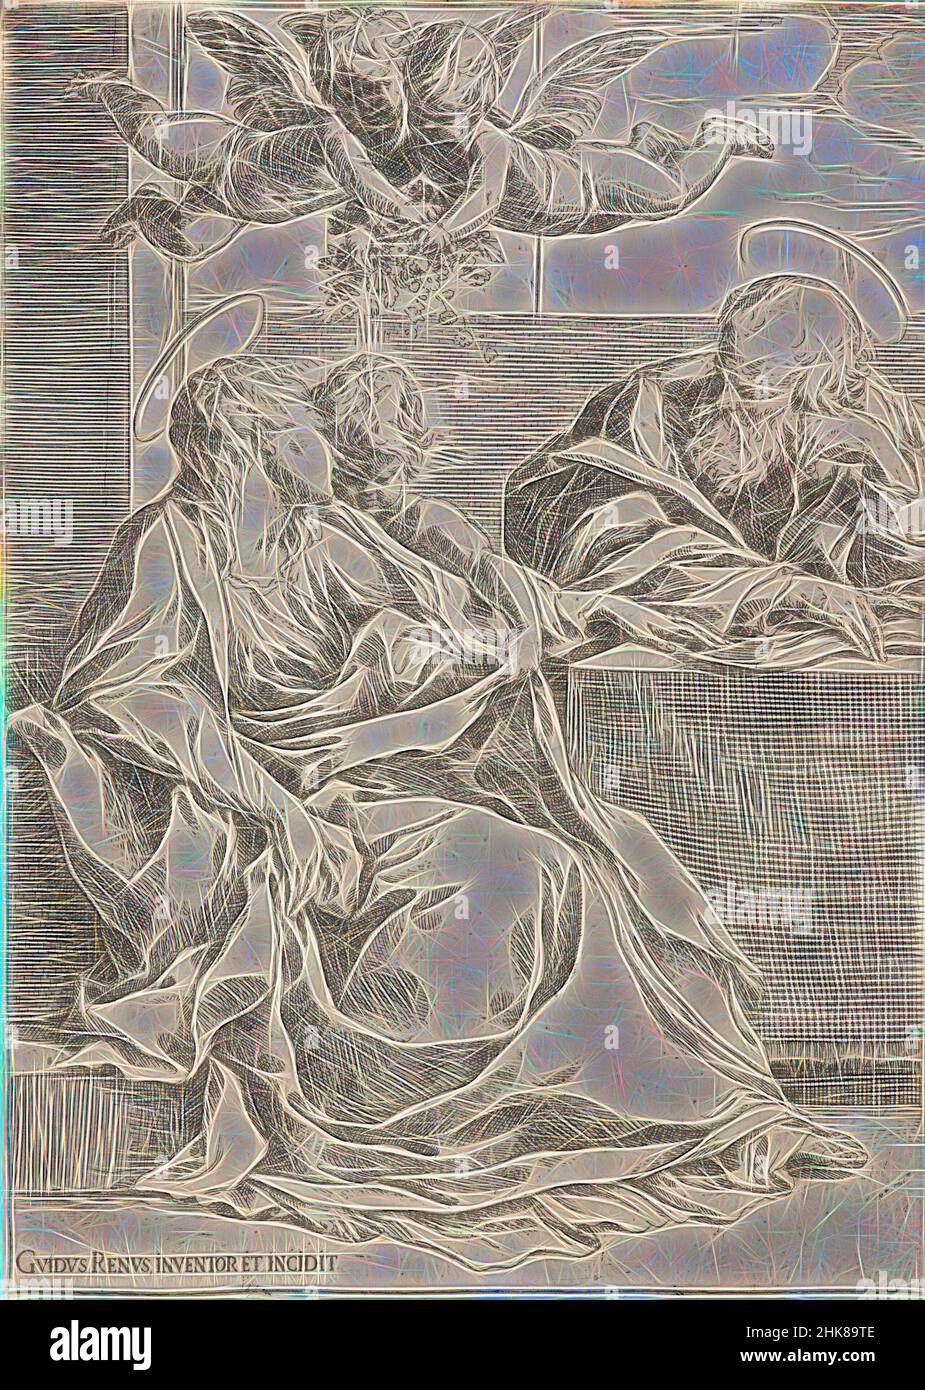 Inspiriert von der Heiligen Familie mit zwei Engeln., Guido Reni, Künstler, 1600-1640, Italien, Radierung, Diese Radierung, gezeichnet und gedruckt vom berühmten Bologneser Künstler Guido Reni (1575-1642), verkörpert den frühen Barock mit seiner kompositorischen Klarheit und stark religiösen Botschaft. Es wird von Reni', von Artotop neu erfunden, charakterisiert. Klassische Kunst neu erfunden mit einem modernen Twist. Design von warmen fröhlichen Leuchten der Helligkeit und Lichtstrahl Strahlkraft. Fotografie inspiriert von Surrealismus und Futurismus, umarmt dynamische Energie der modernen Technologie, Bewegung, Geschwindigkeit und Kultur zu revolutionieren Stockfoto